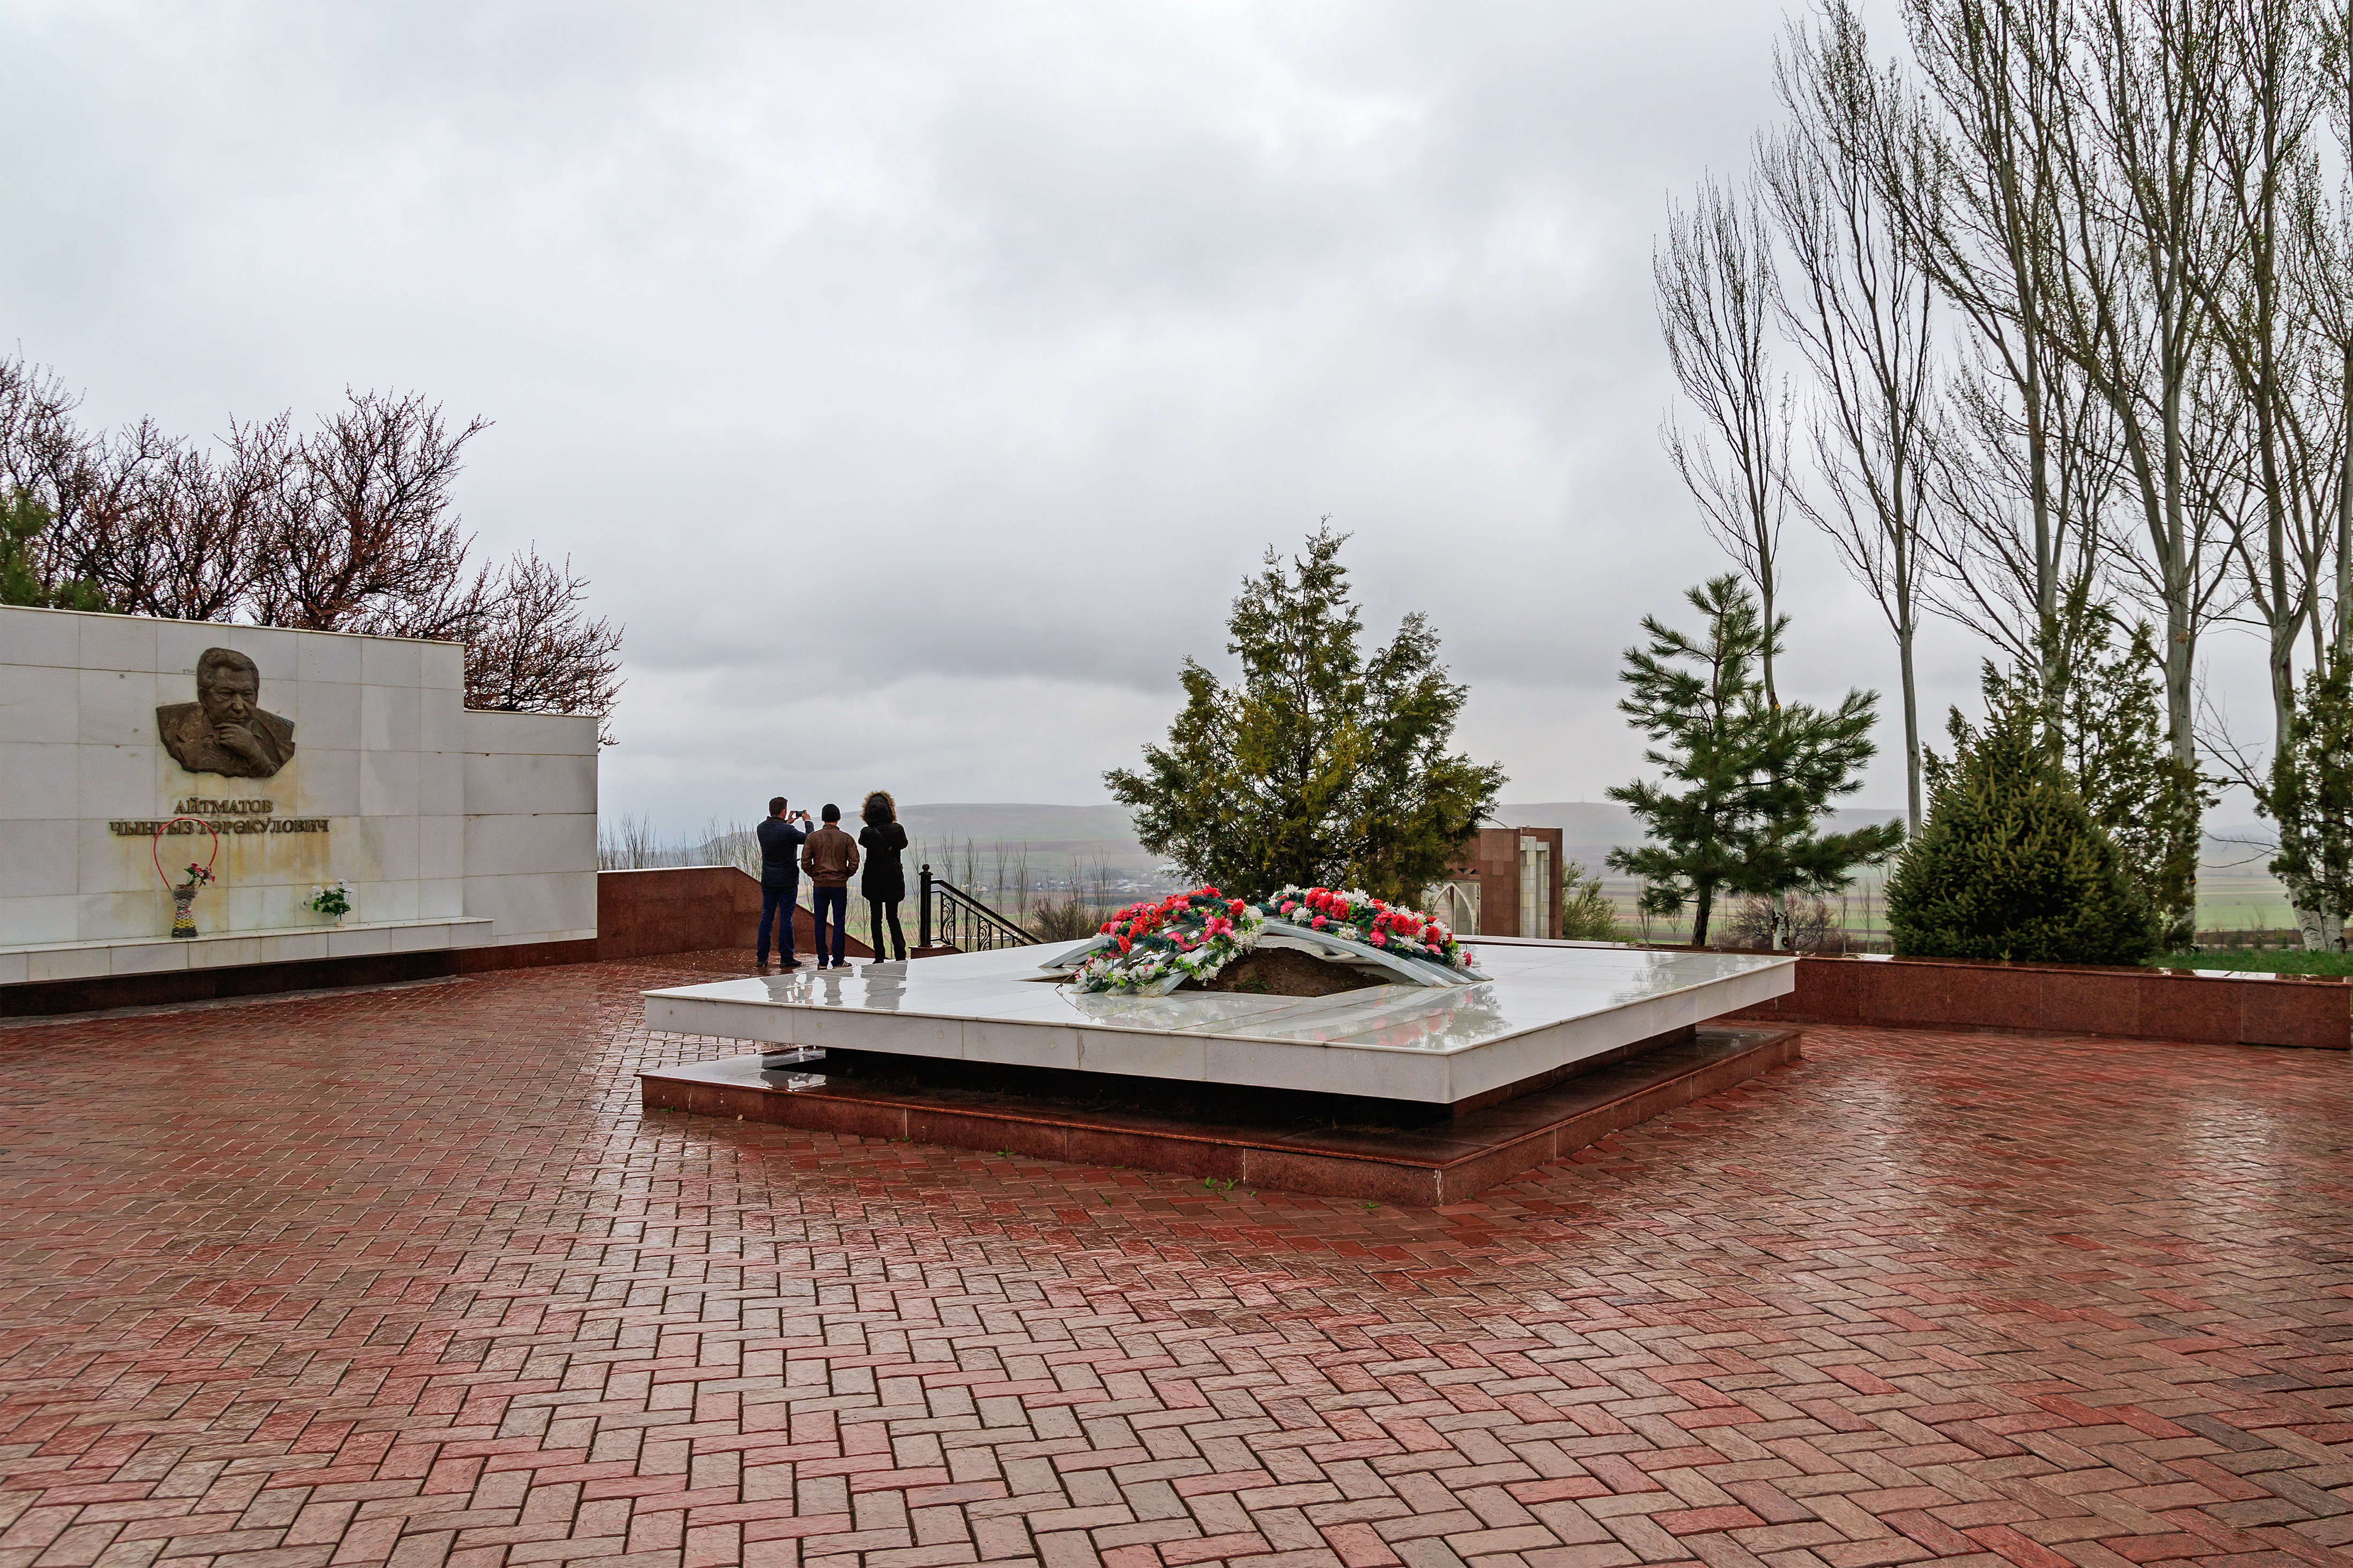 Ata-Beyit Memorial near Bishkek 03-2016 img02